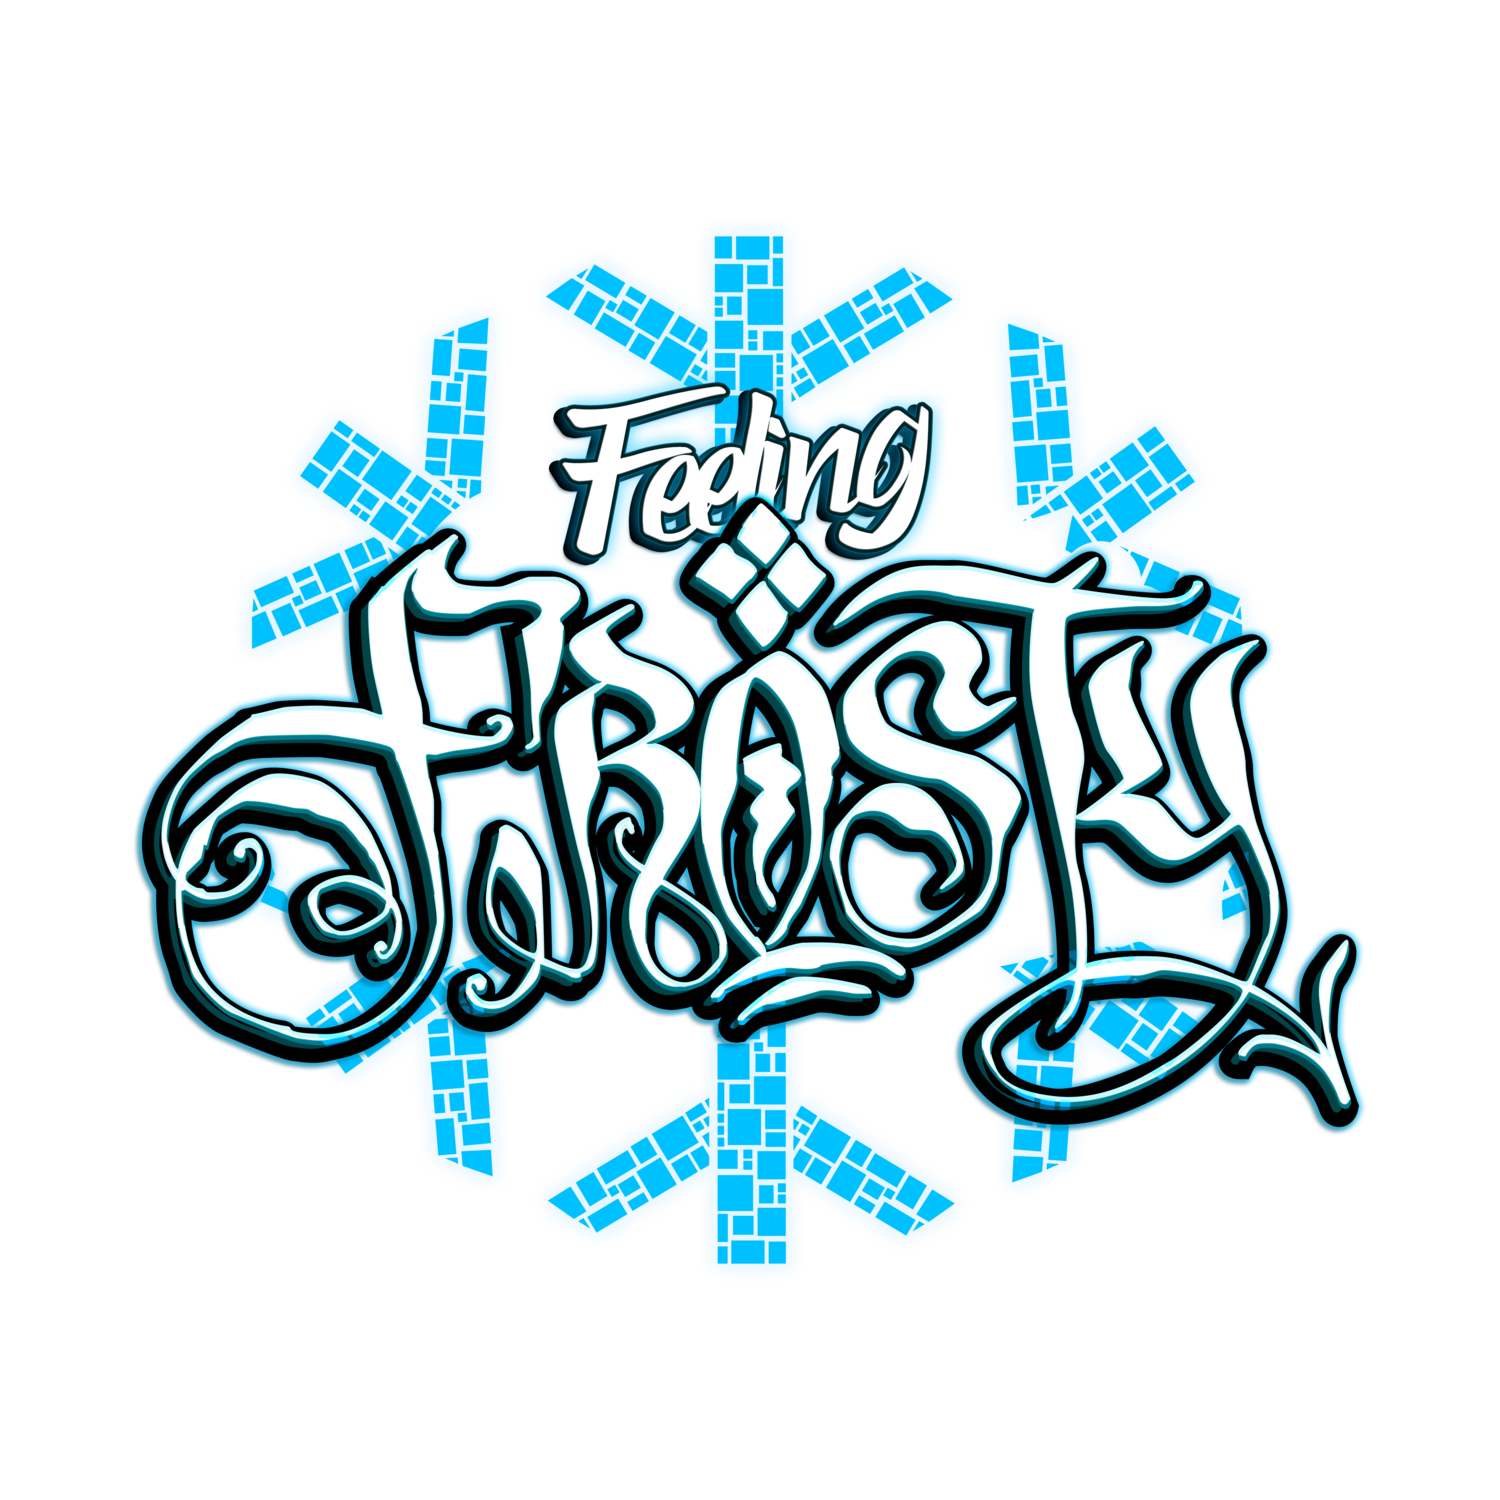 Feeling Frosty